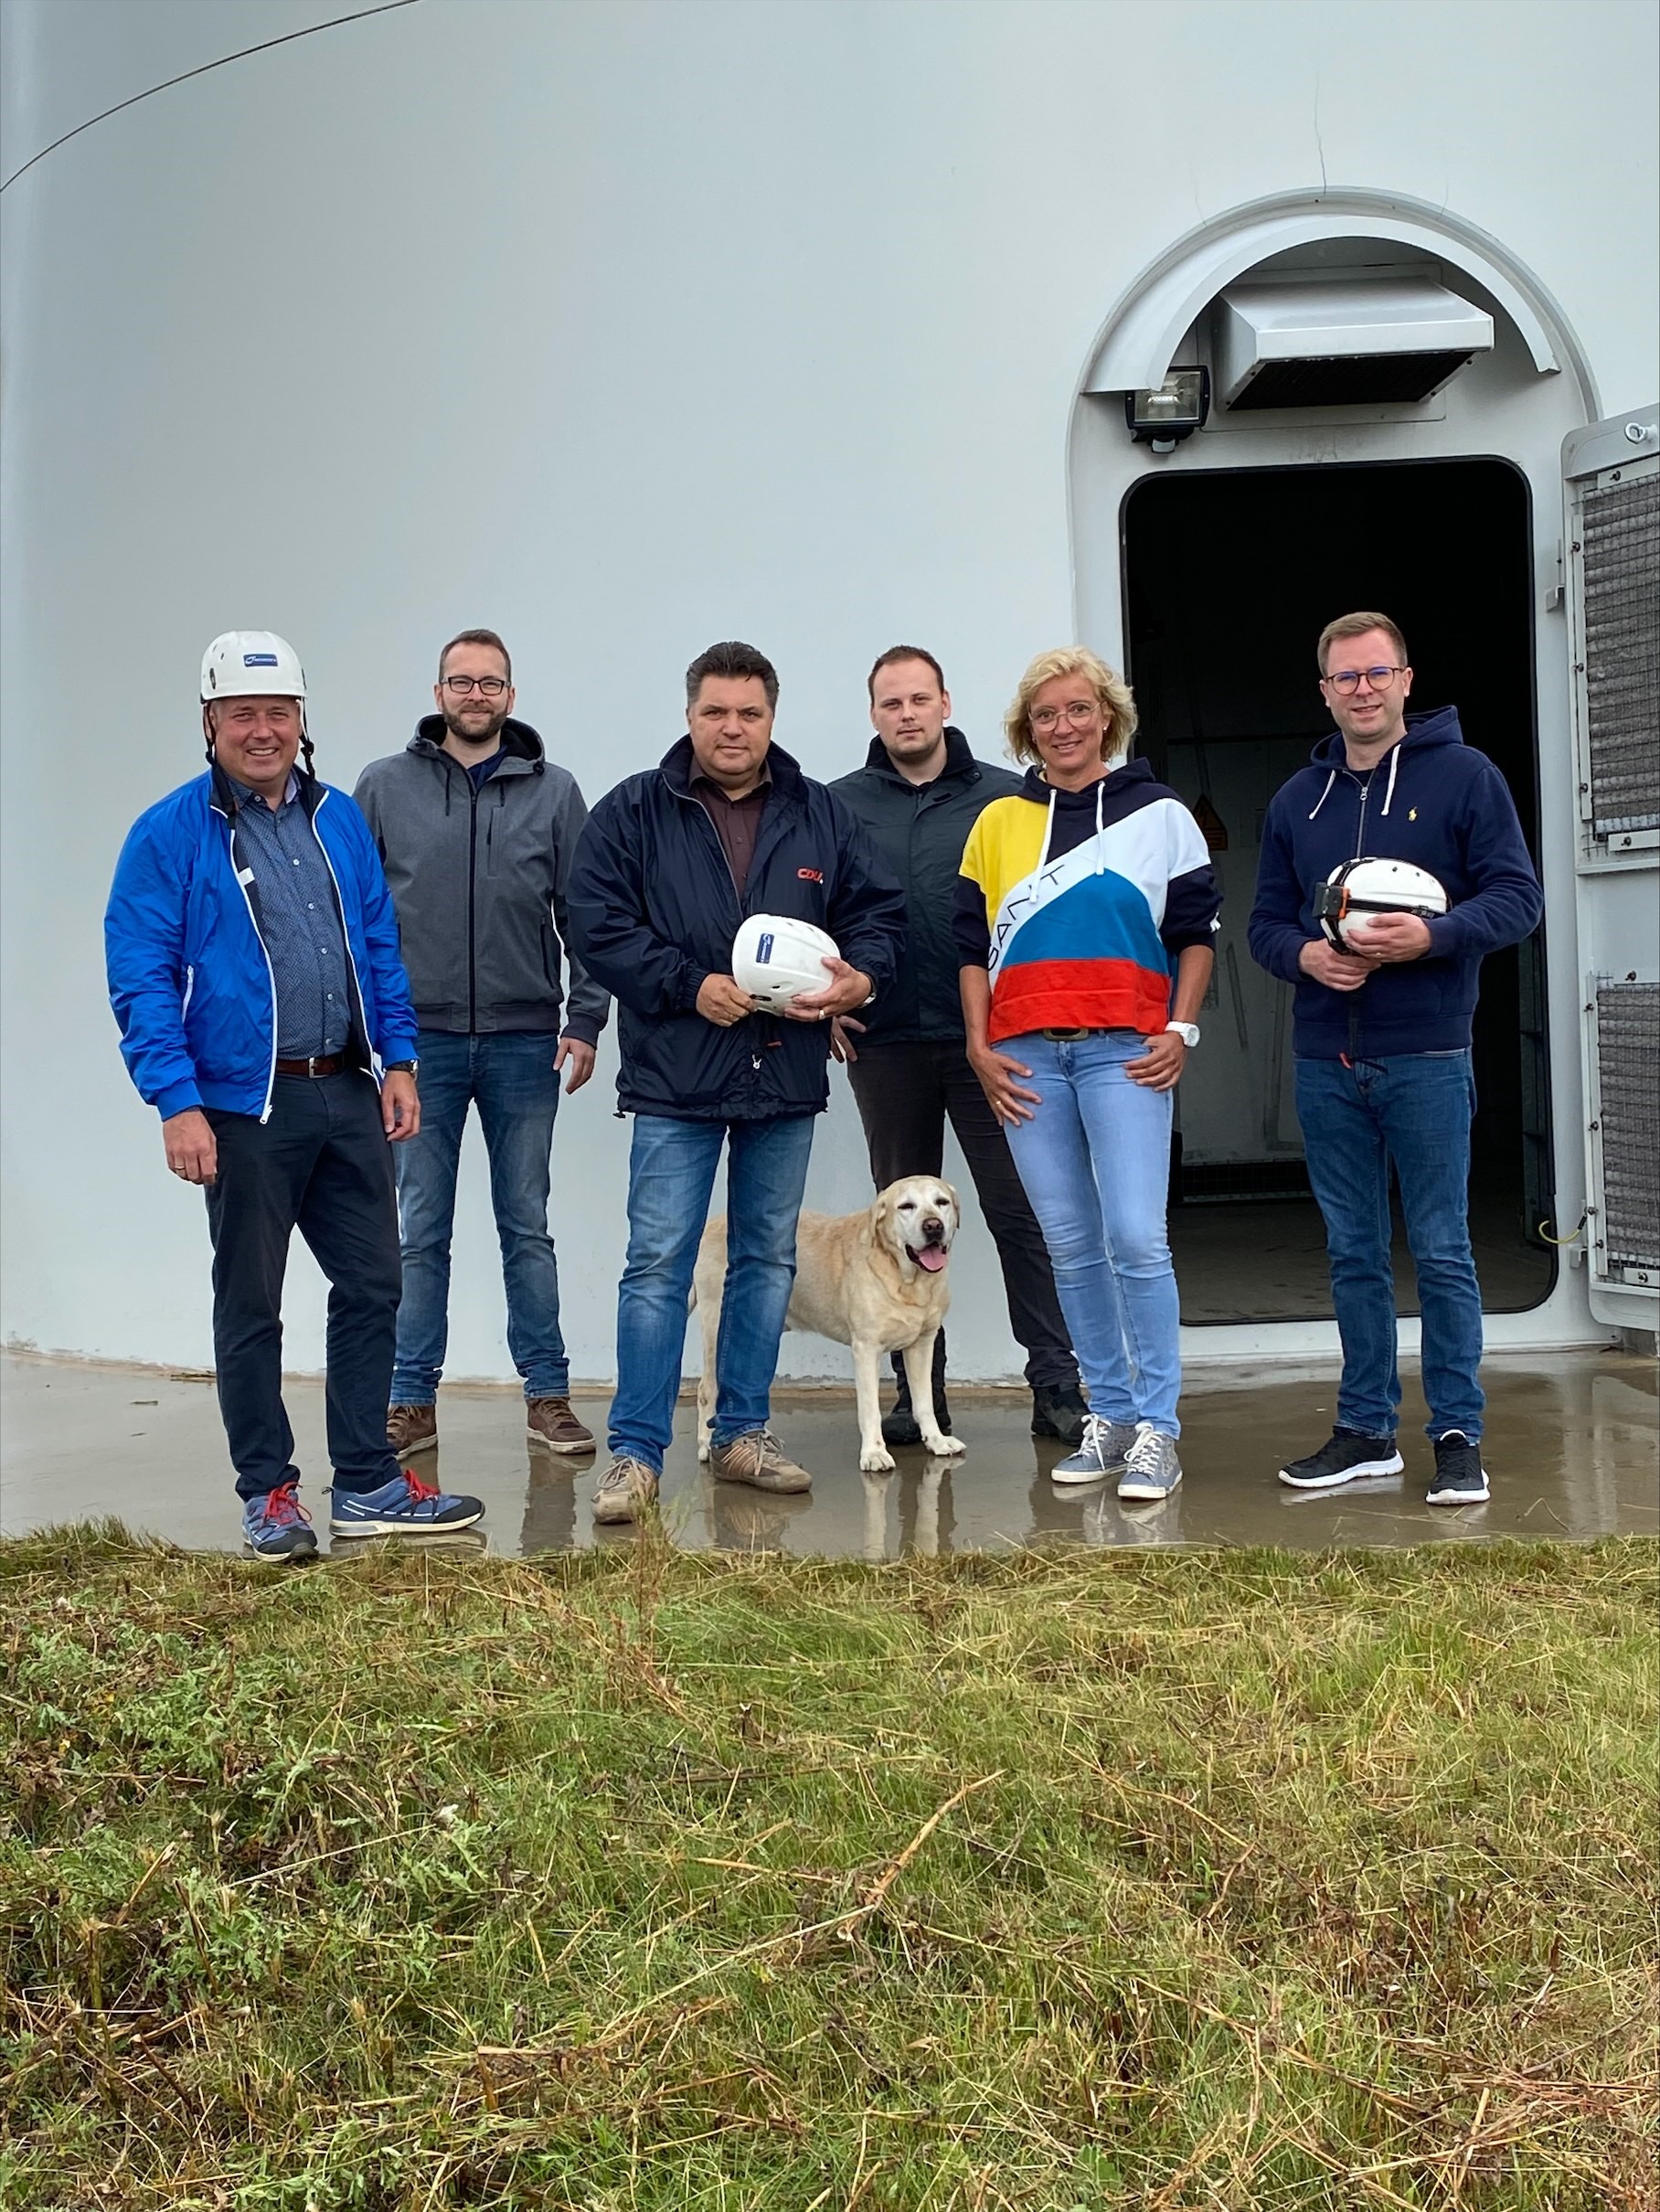 An der Windkraftanlage v. l. n. r.: Holger Bormann, Frederik Brandt, Uwe Schäfer, Alexander Kamphenkel, Bärbel Heidebroek und Dr. Adrian Haack